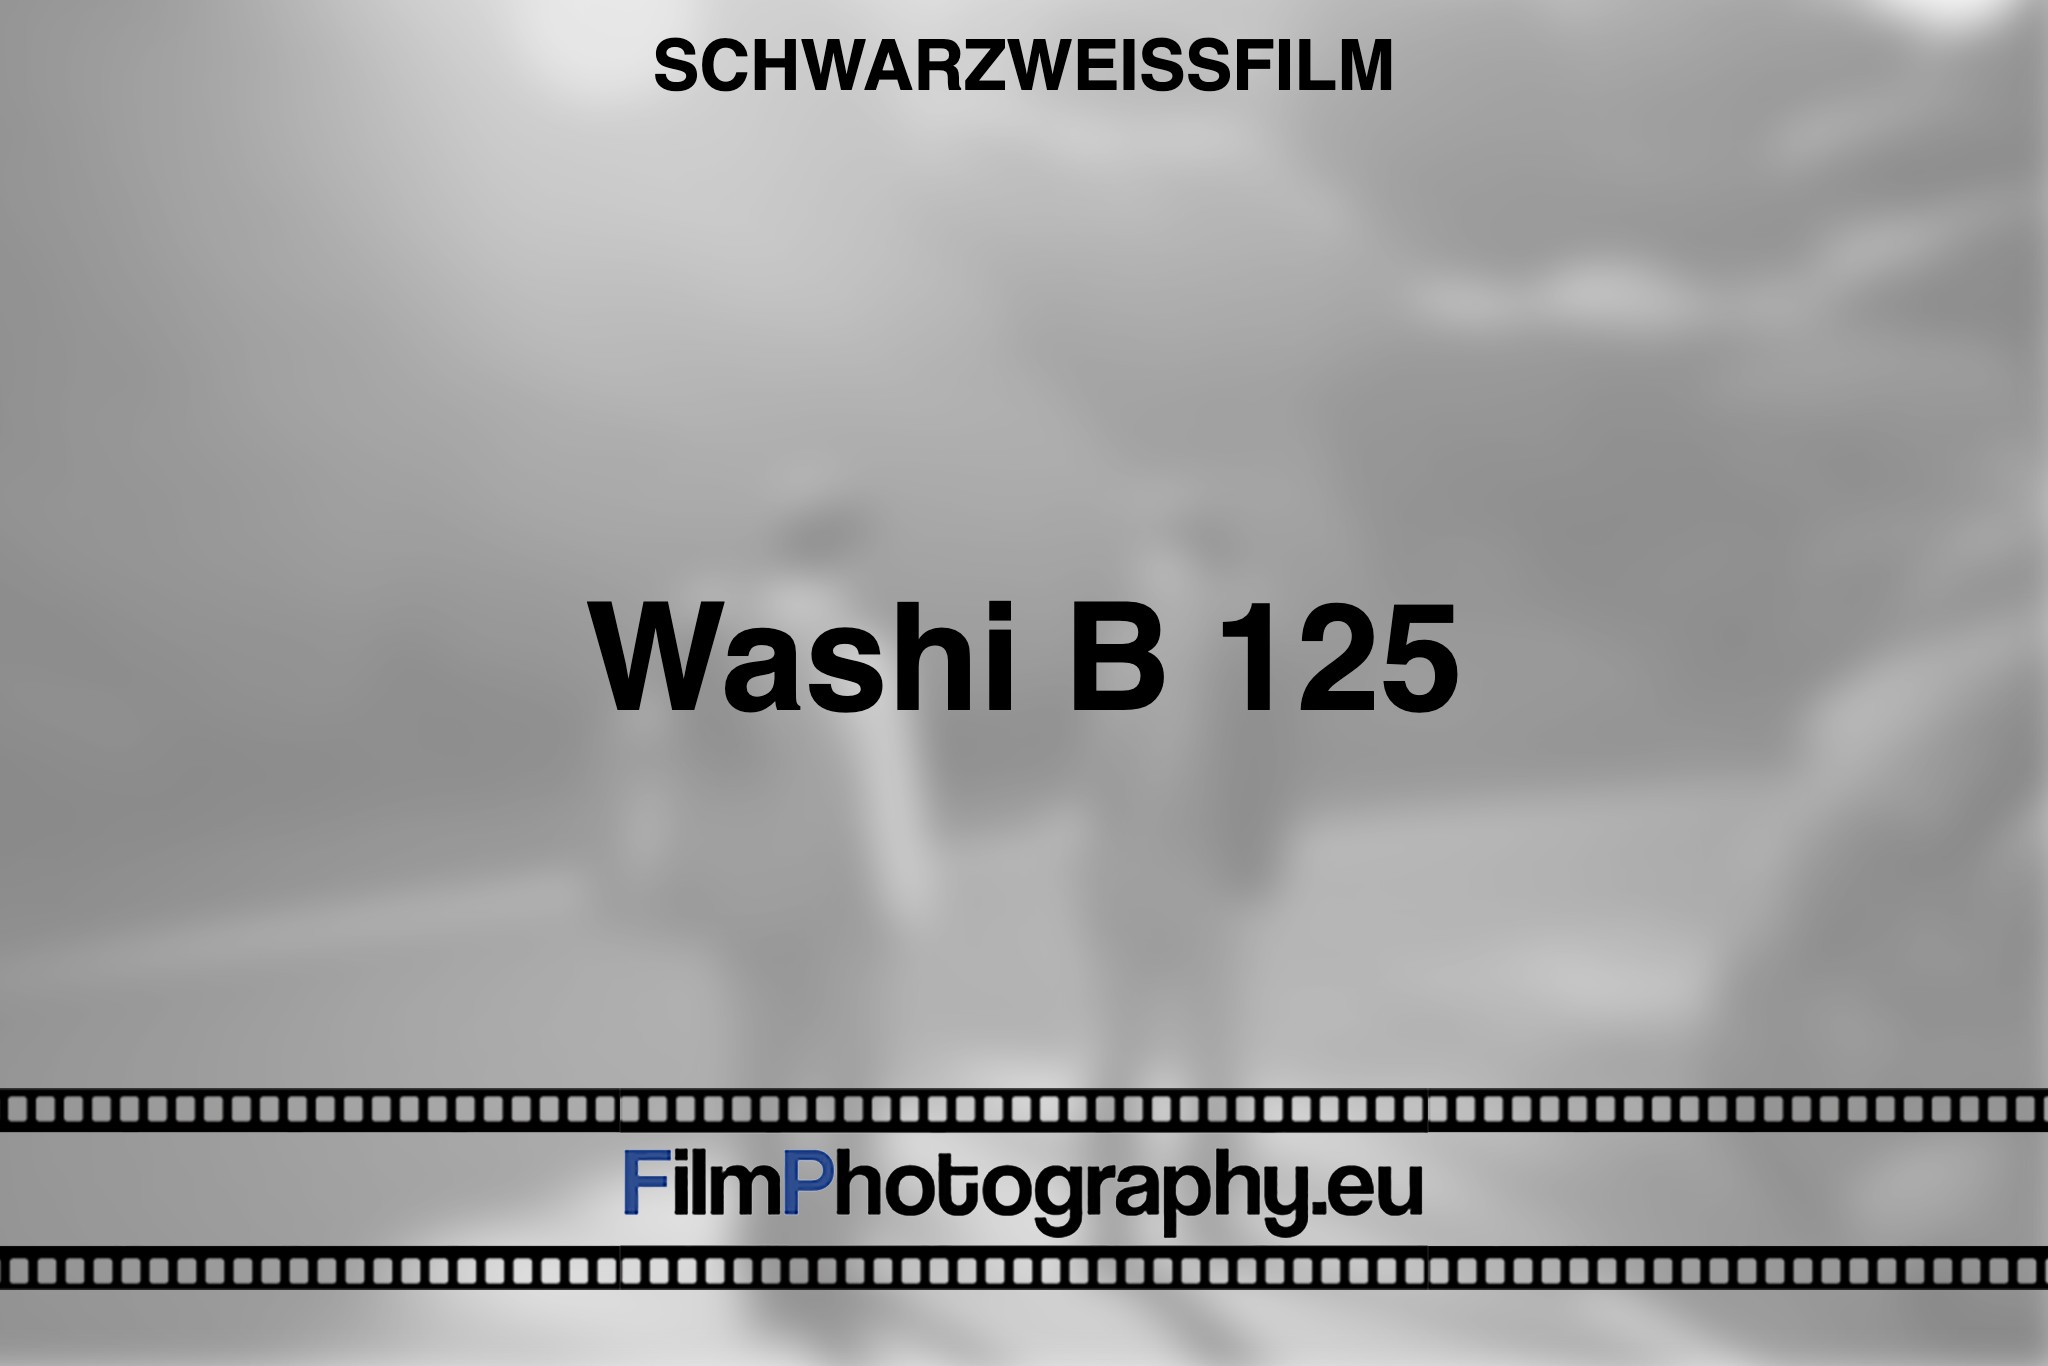 washi-b-125-schwarzweißfilm-bnv